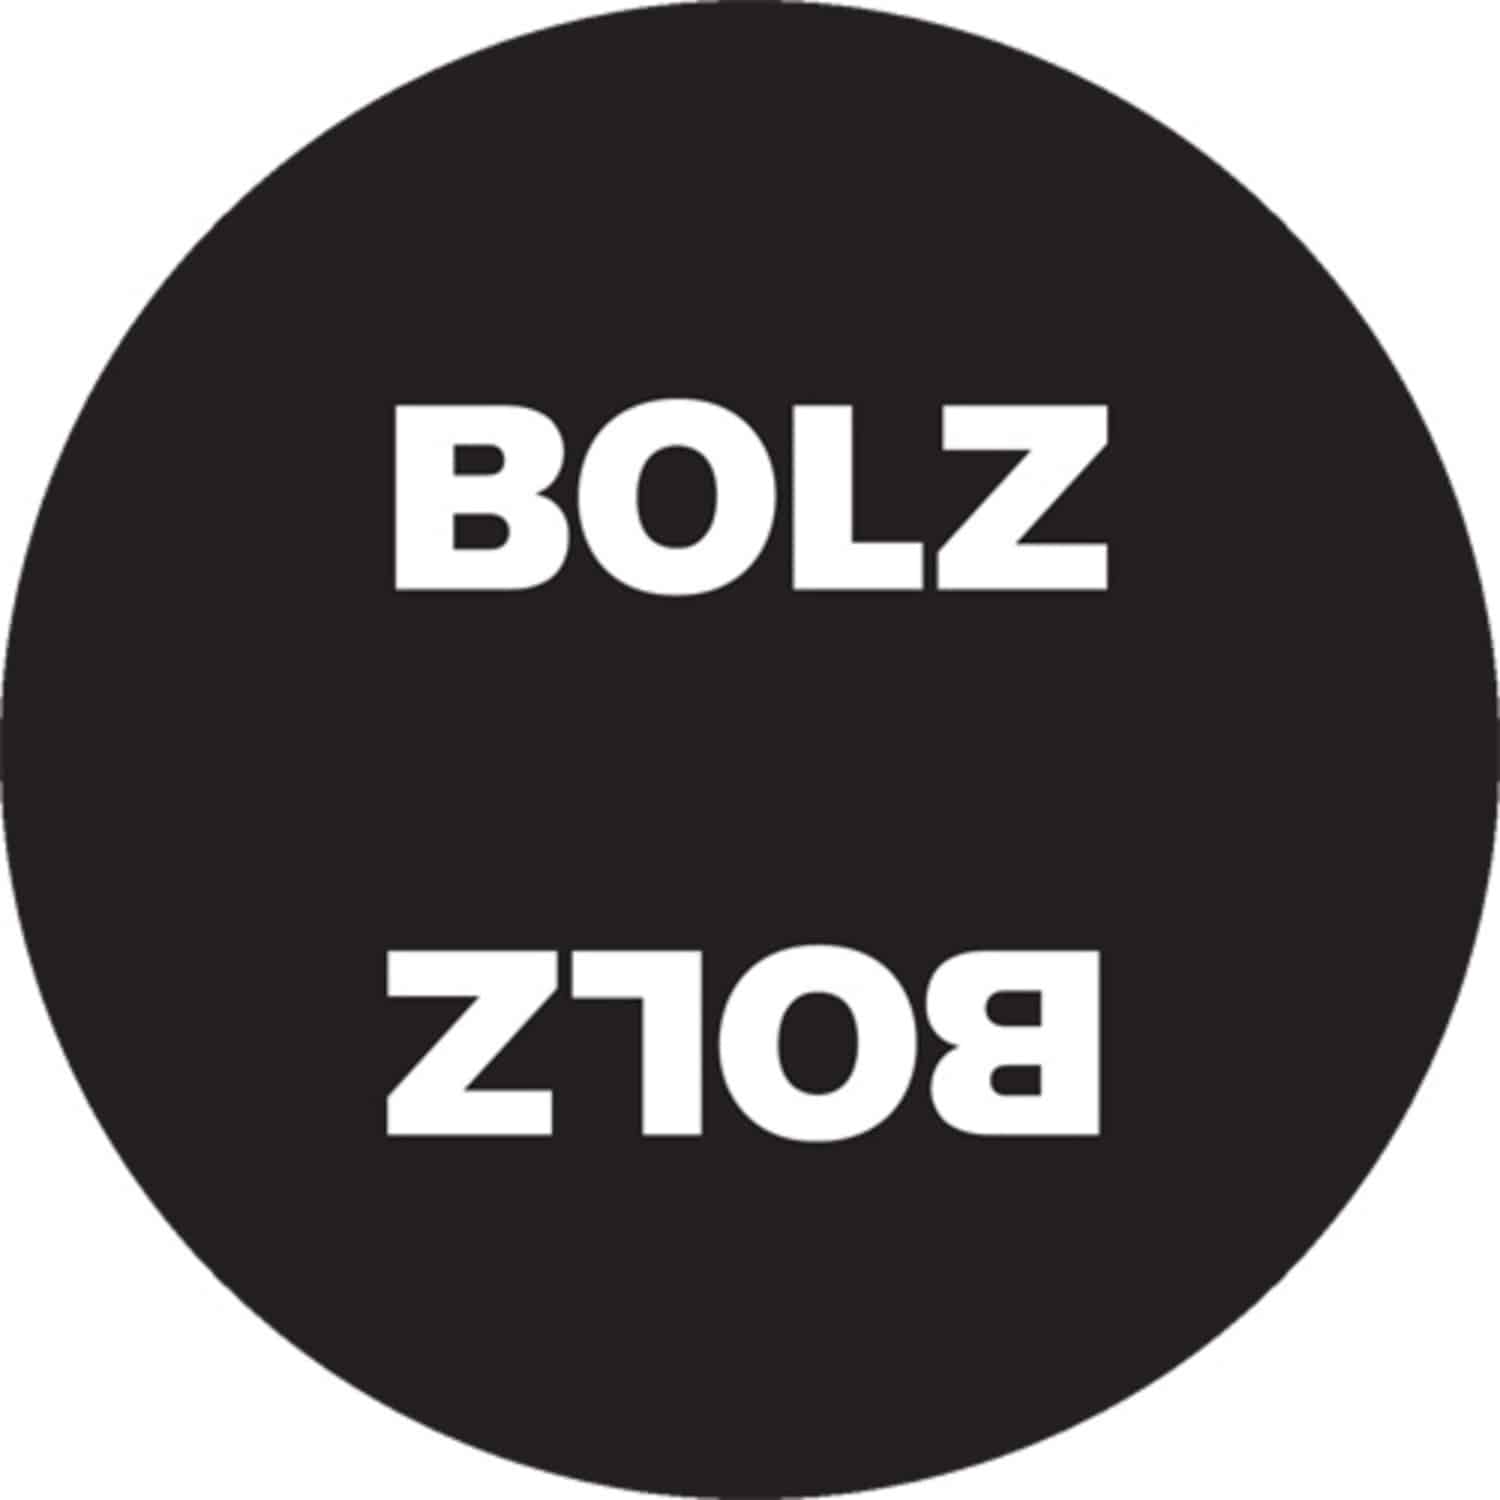 Bolz Bolz - PRACTICE PARIS